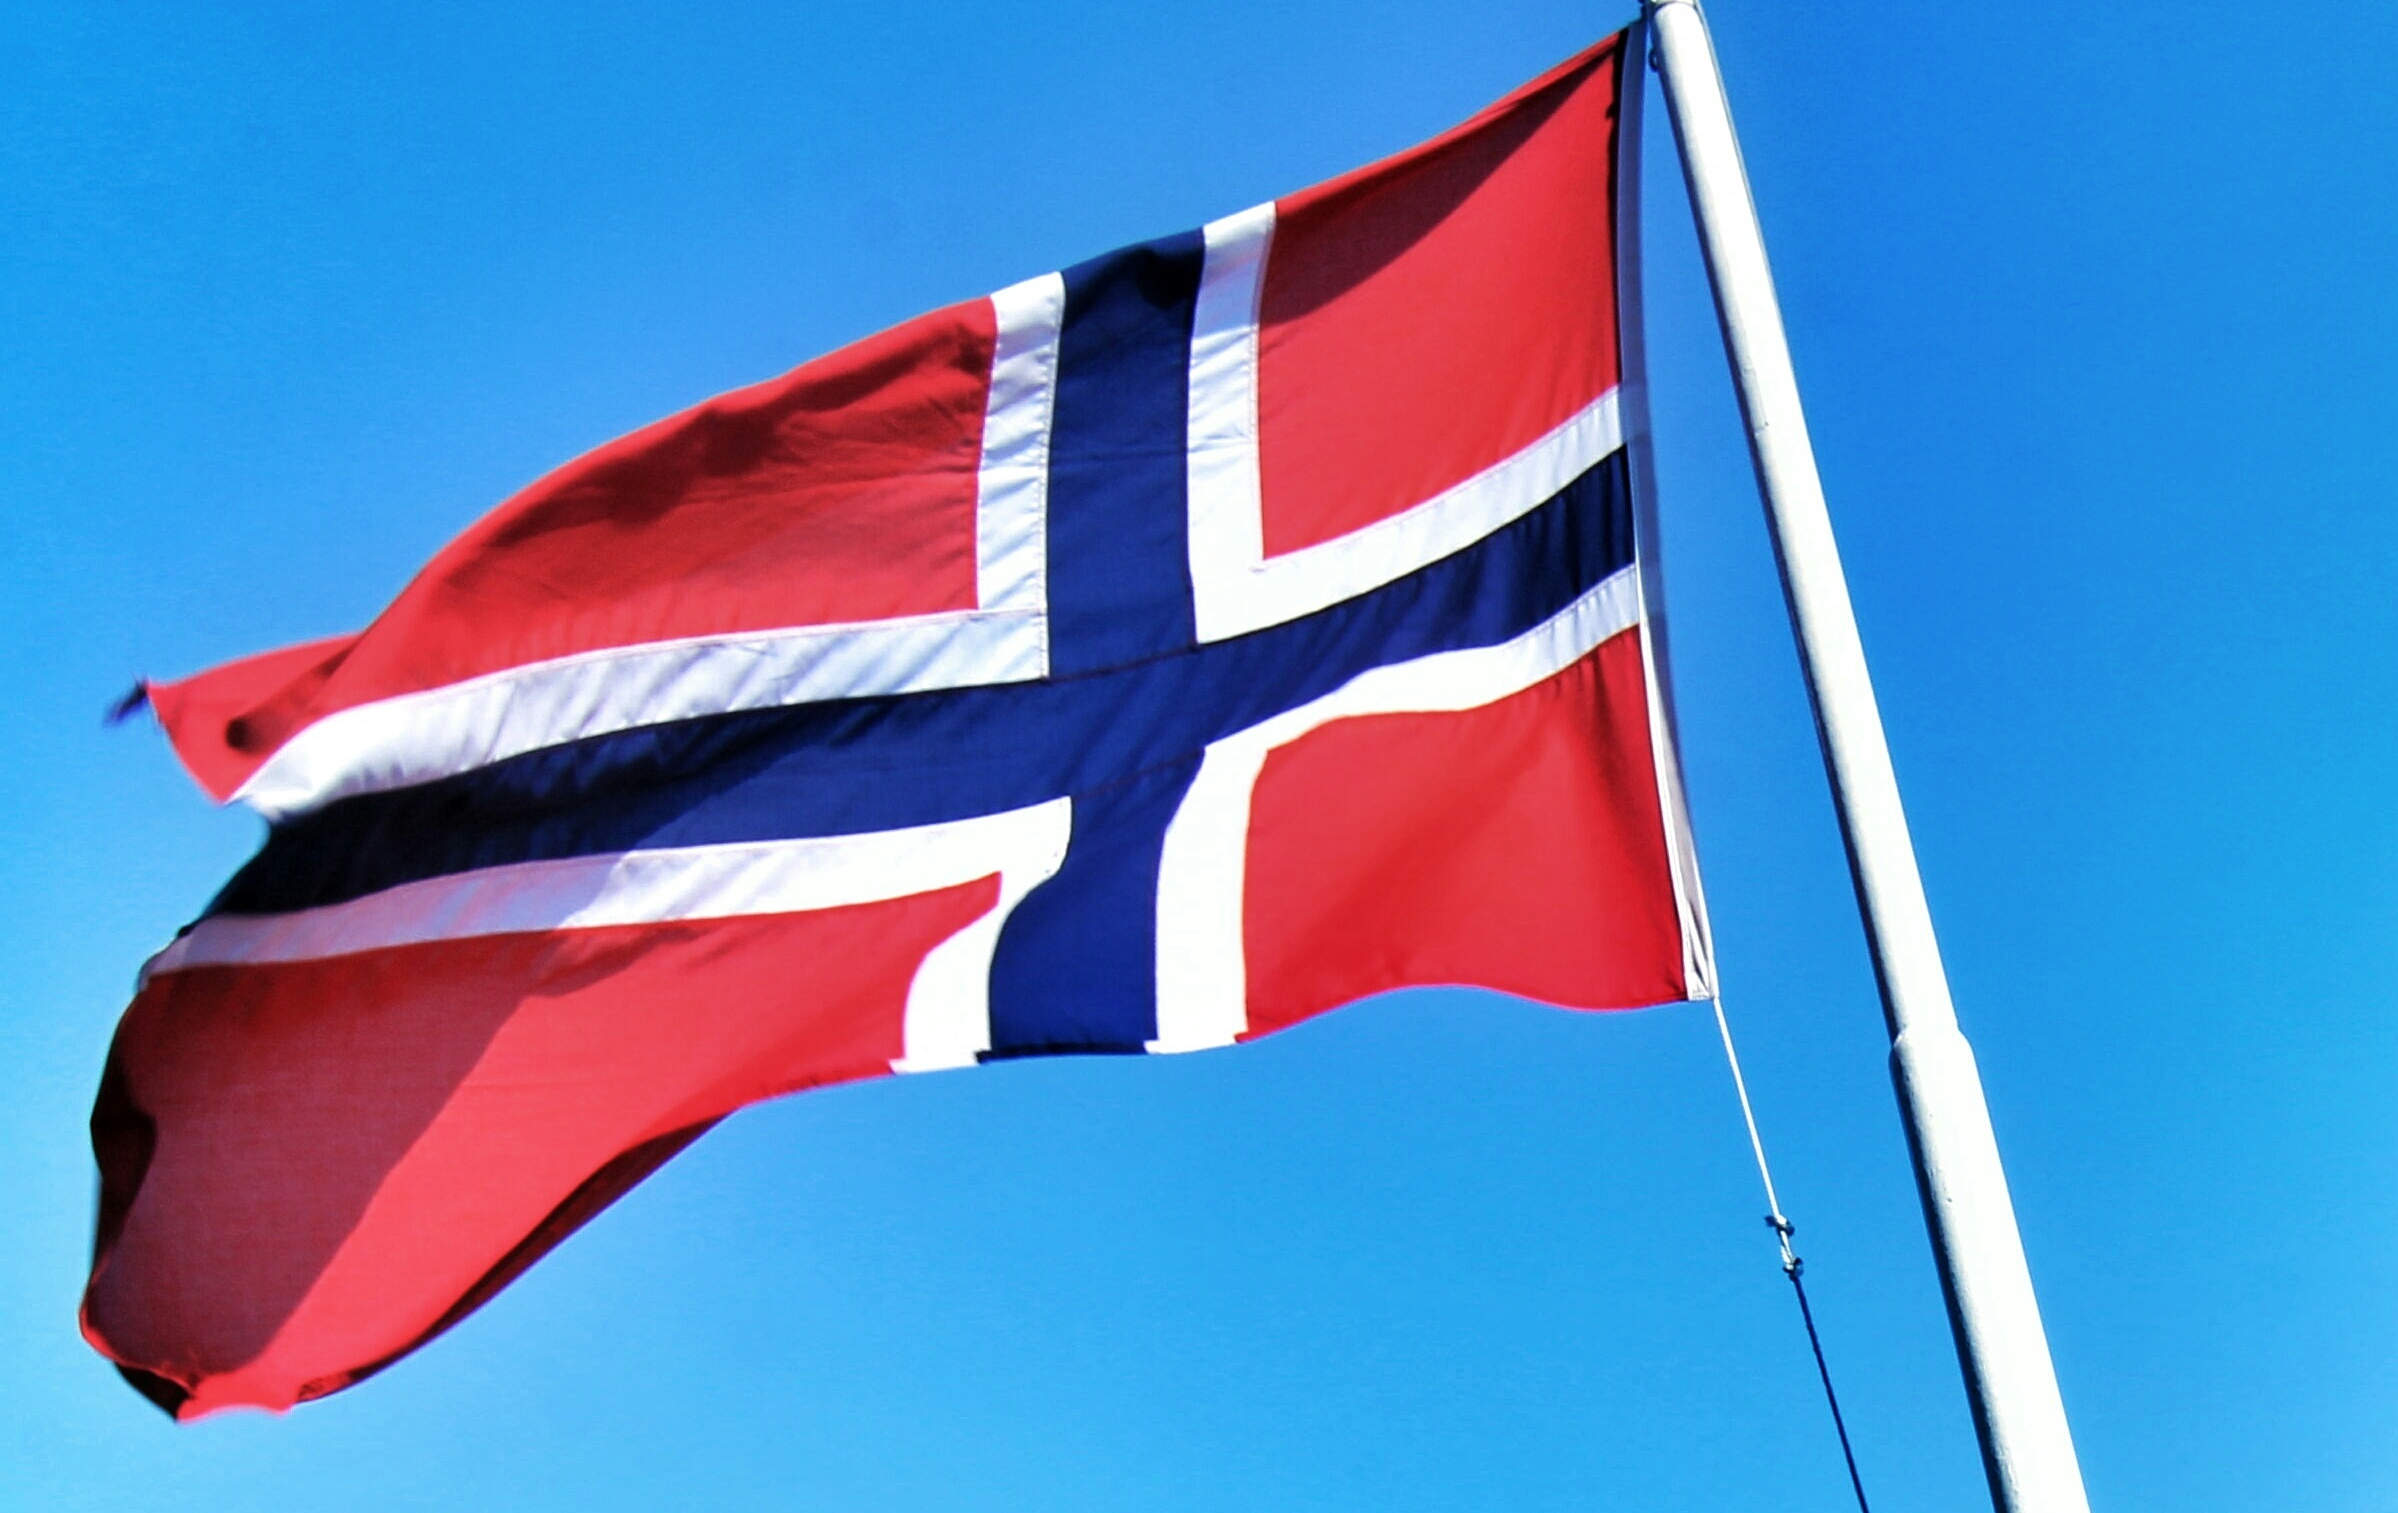 BNP Paribas Leasing Solutions Norway